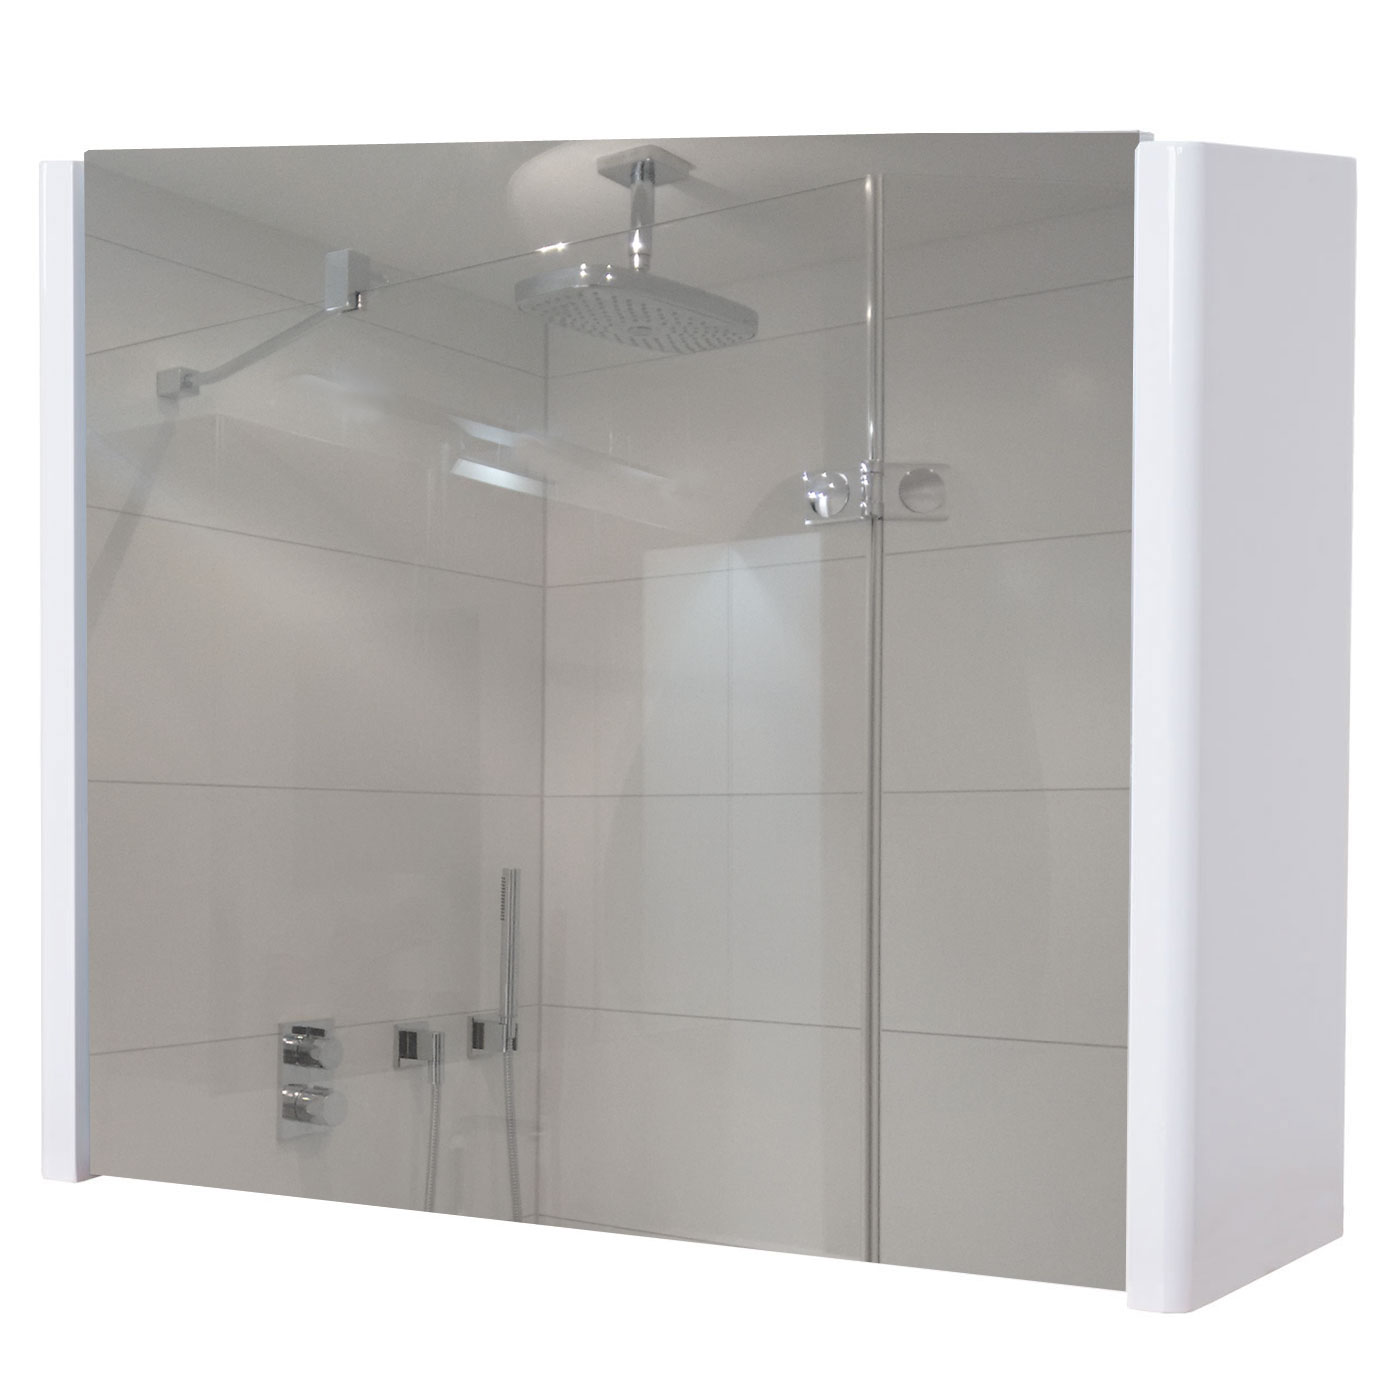 aufklappbar hochglanz Wandspiegel Badspiegel Badezimmer Spiegelschrank HWC-B19 